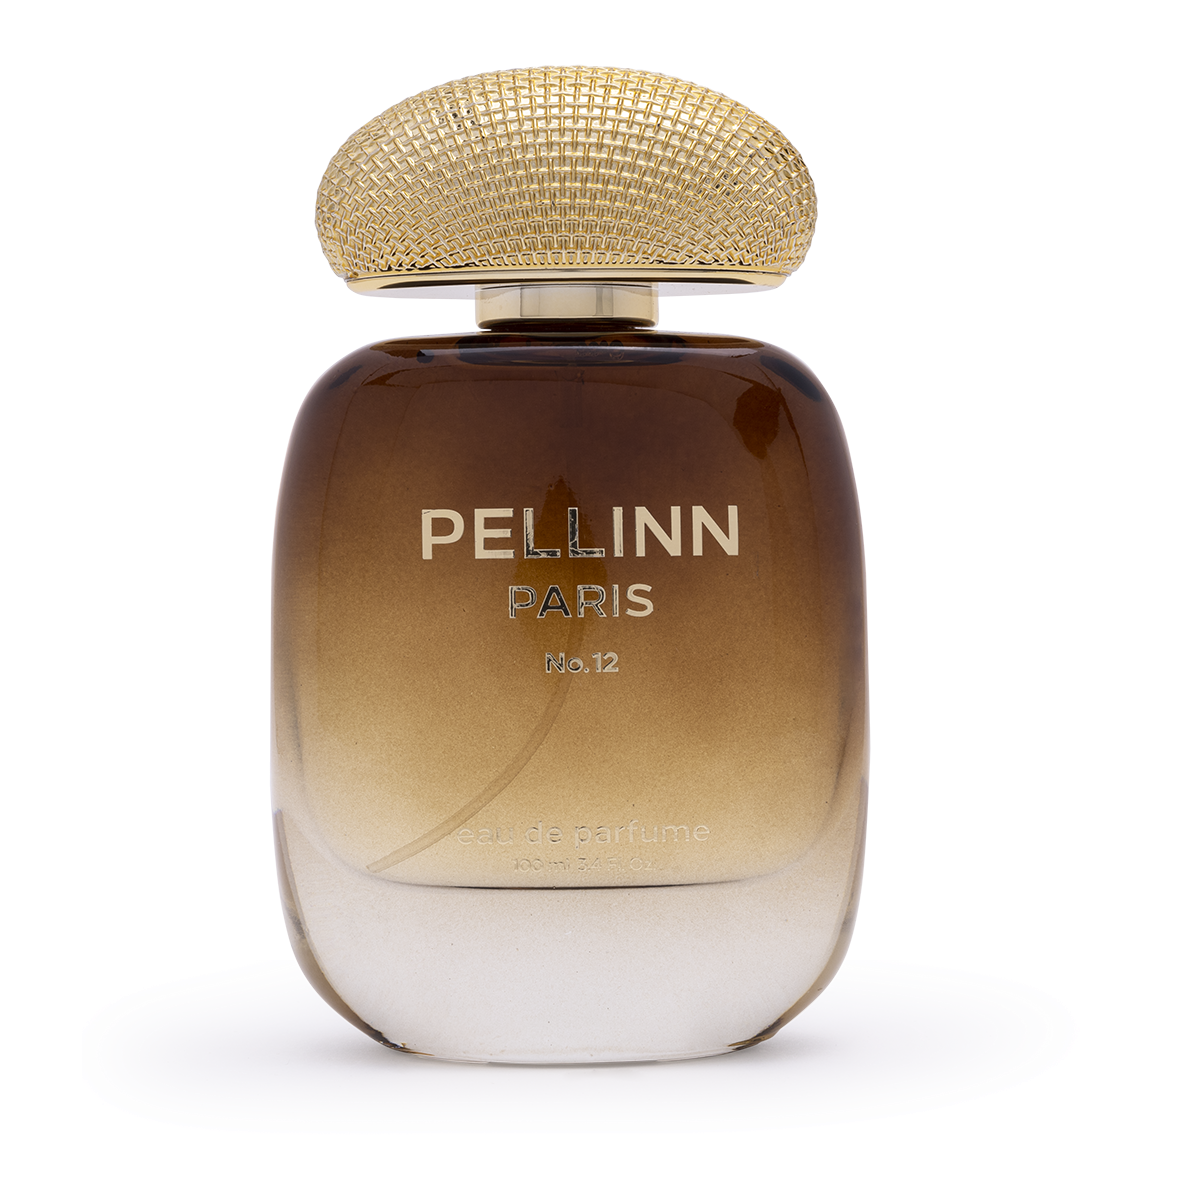 Pellinn Paris No.12 Çiçeksi ve Odunsu Kadın EDP Parfüm 100 ml  Pellinn Paris Parfüm